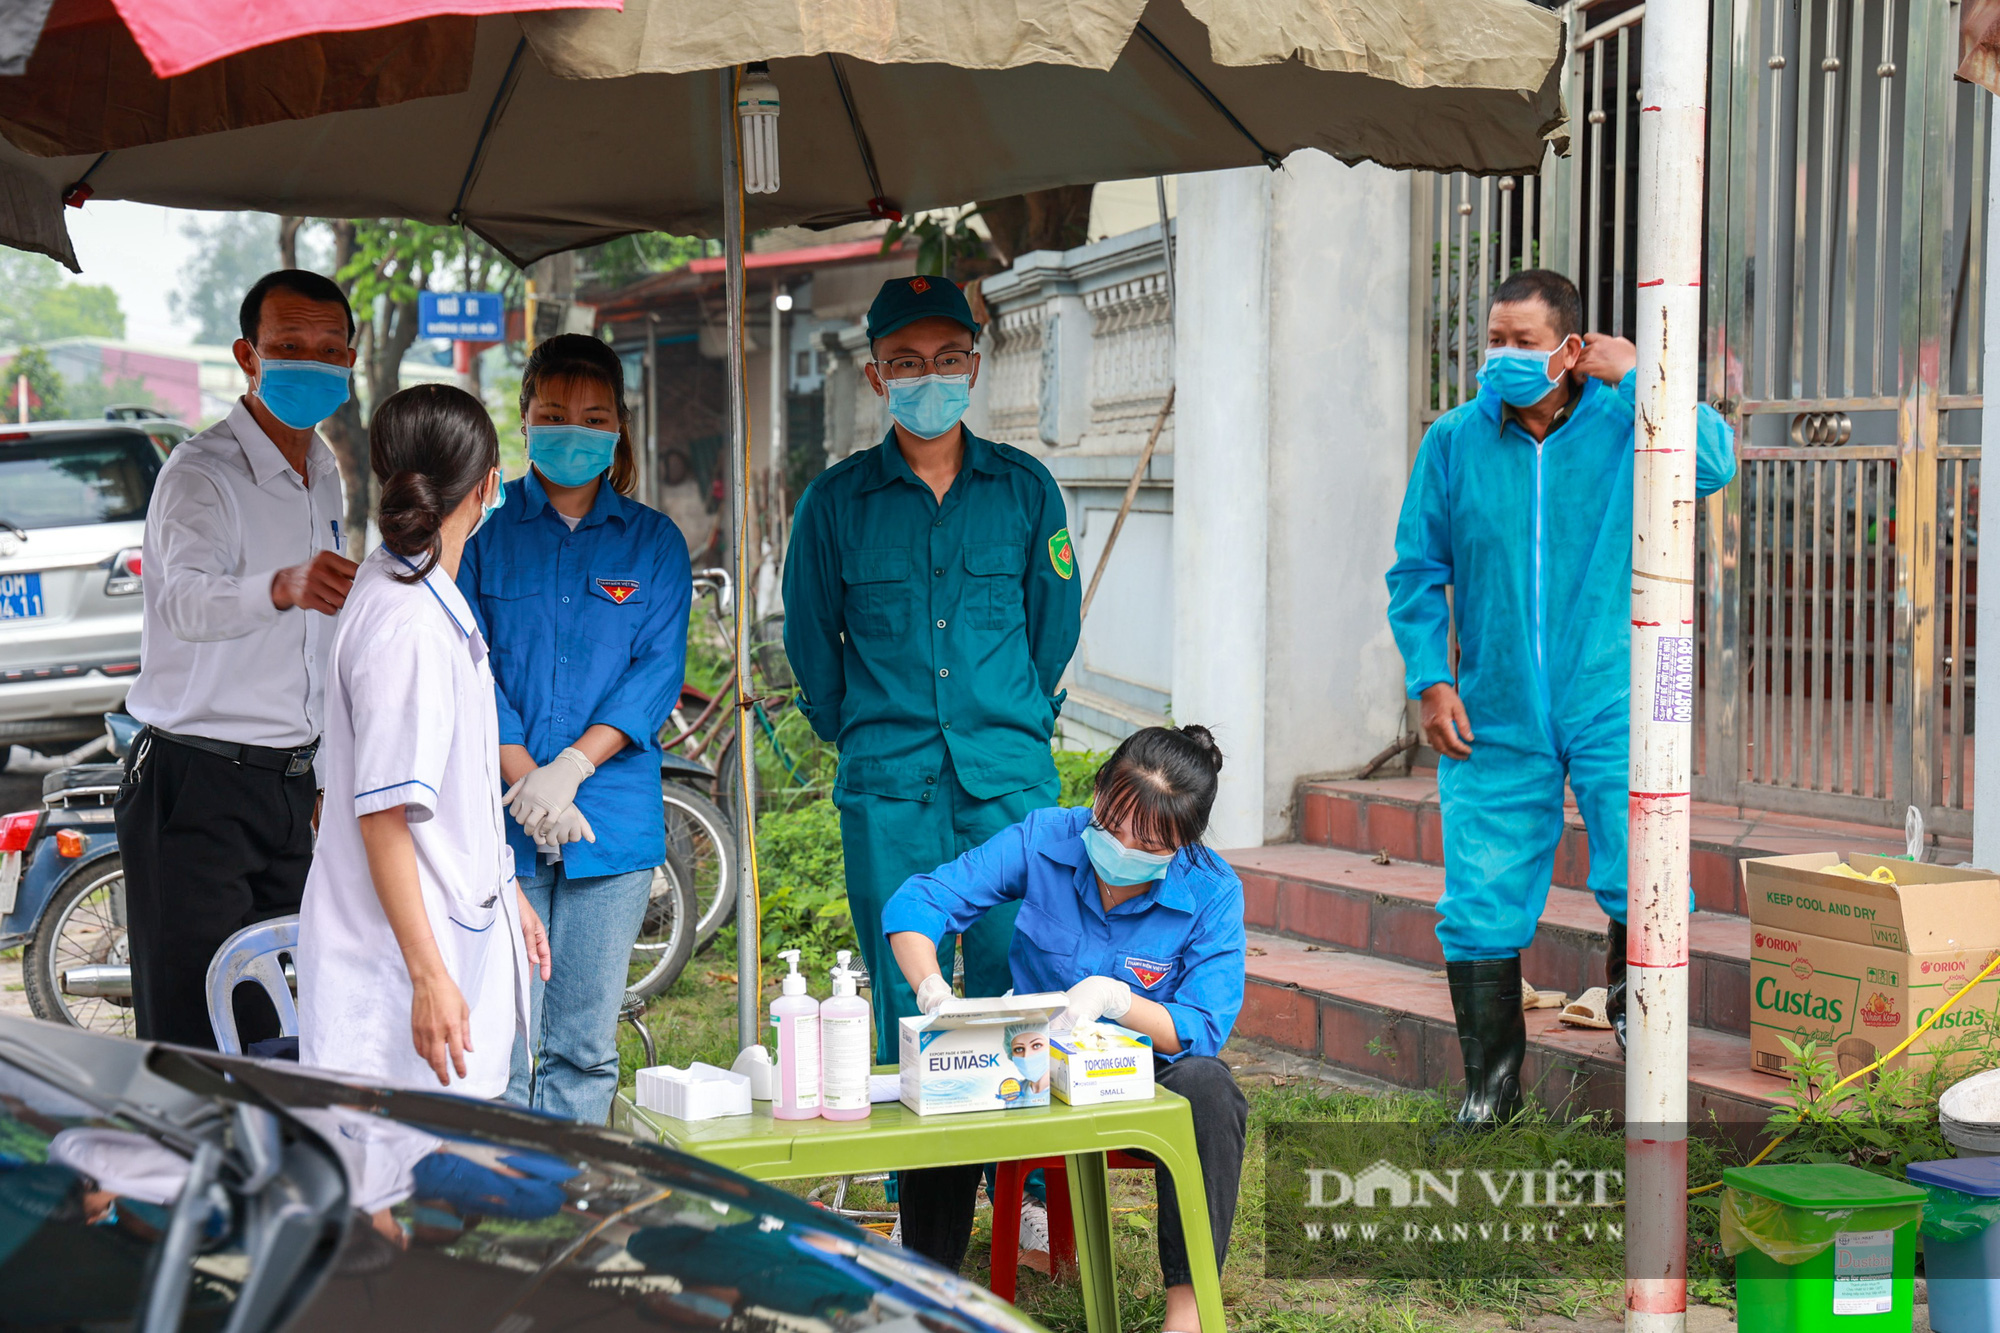 Hà Nội: Phó Chủ tịch TP thị sát khu cách ly nơi có ca nhiễm Covid 19 ở Đông Anh - Ảnh 7.